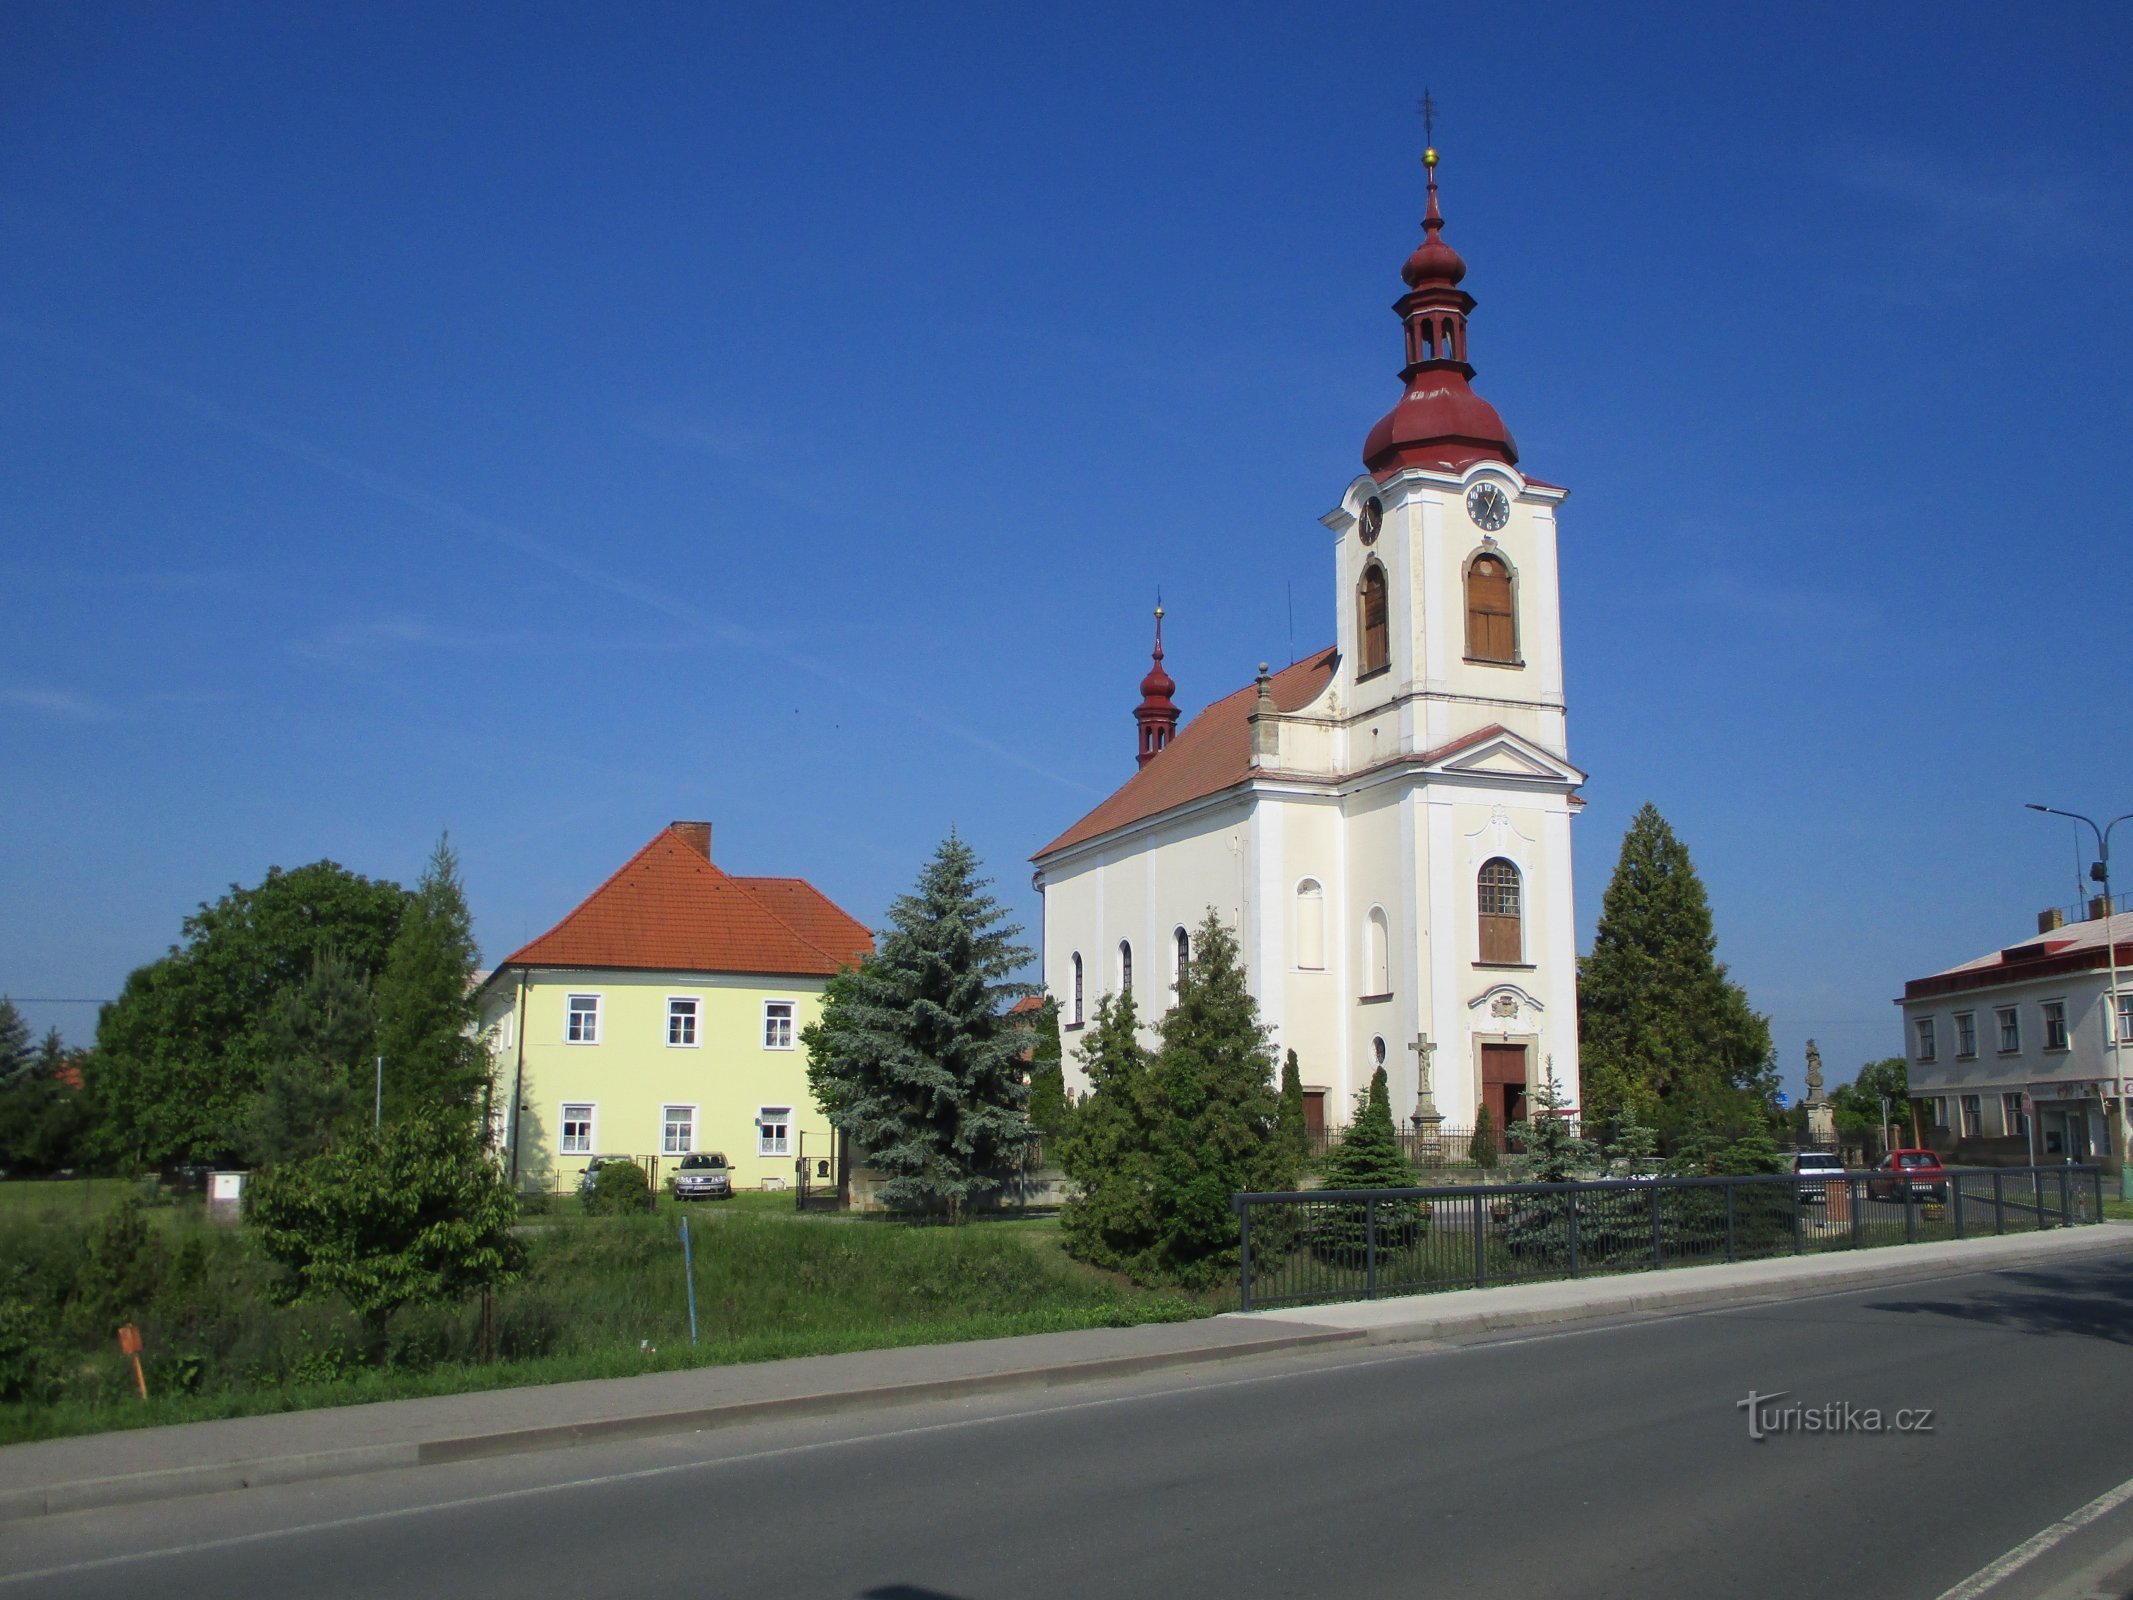 crkva sv. Katarine, djevice i mučenice (České Meziříčí)